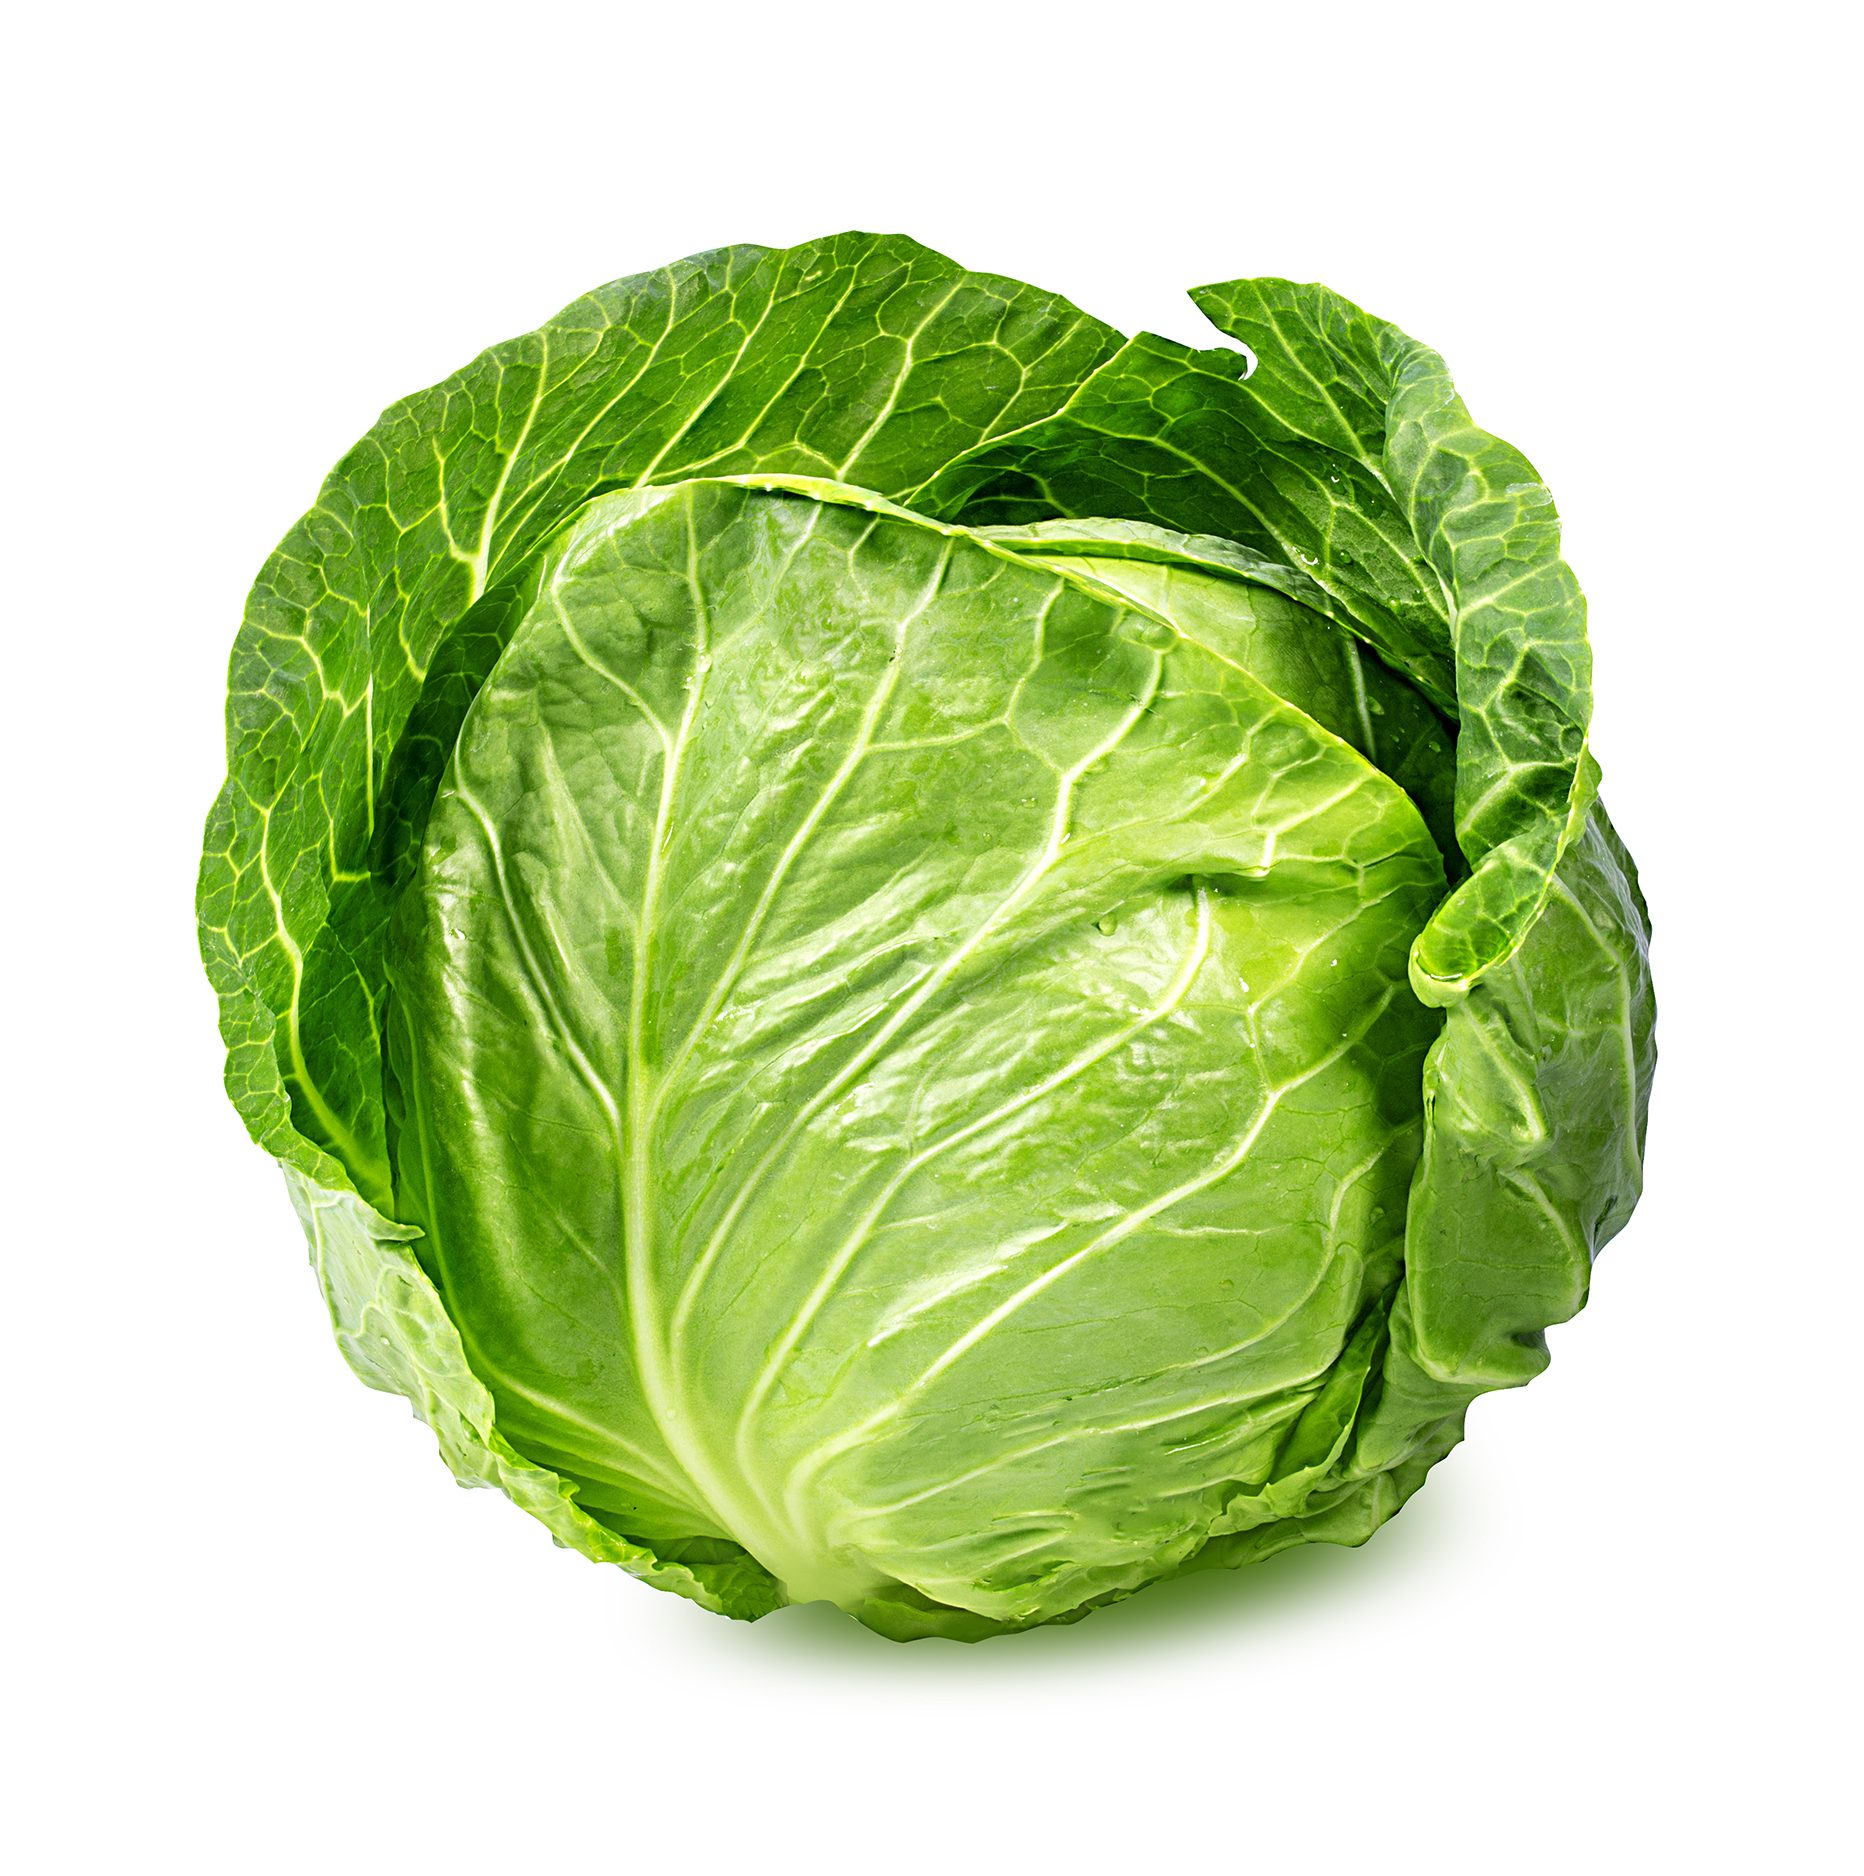 https://jussapparels.com/wp-content/uploads/2021/05/Freshpoint-green-cabbage.jpg